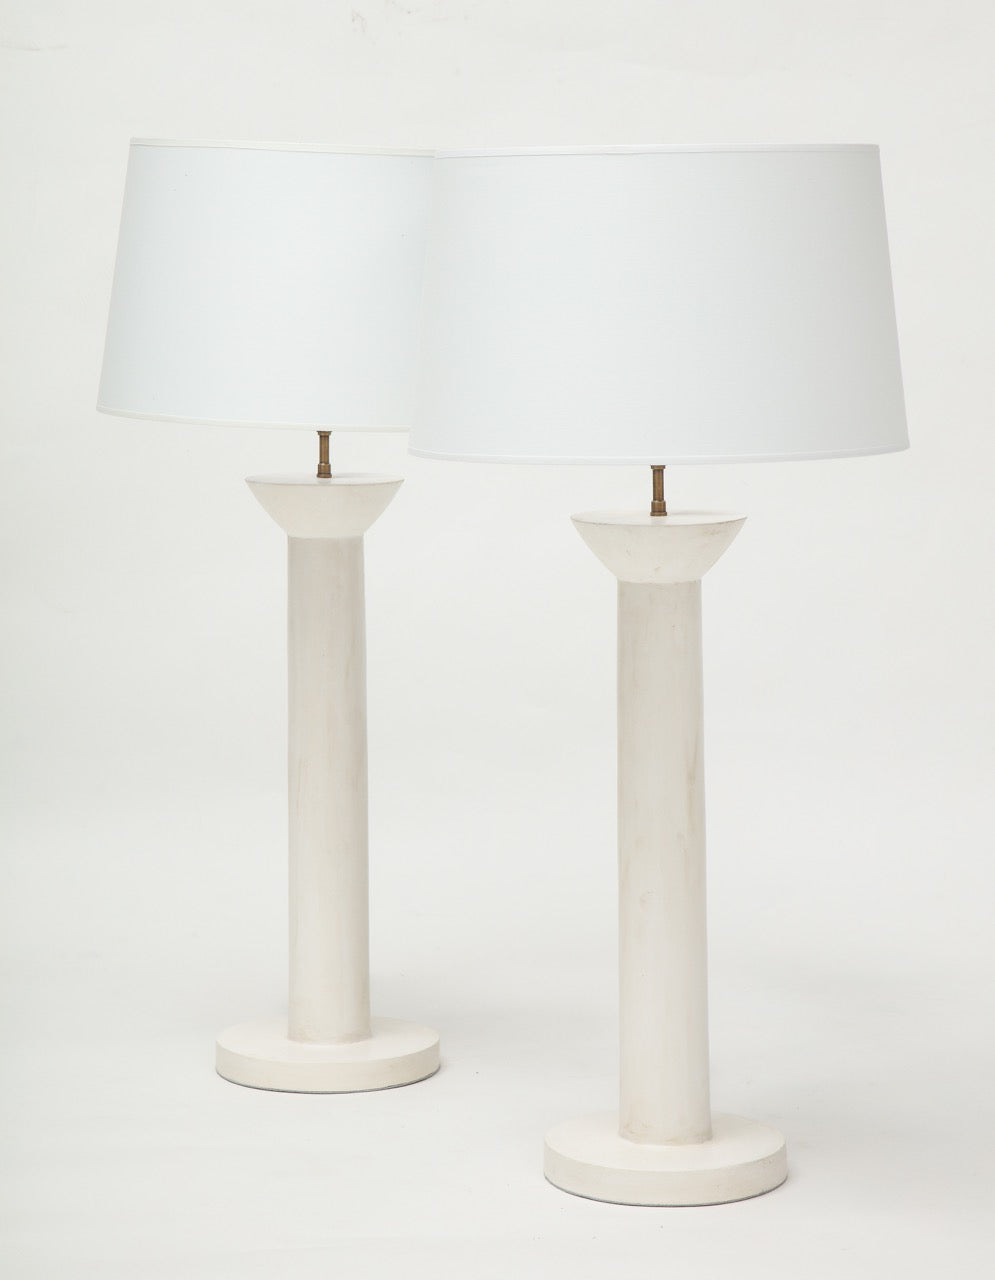 Pair of "Colonne" Plaster Lamps by Facto Atelier Paris, France 2021